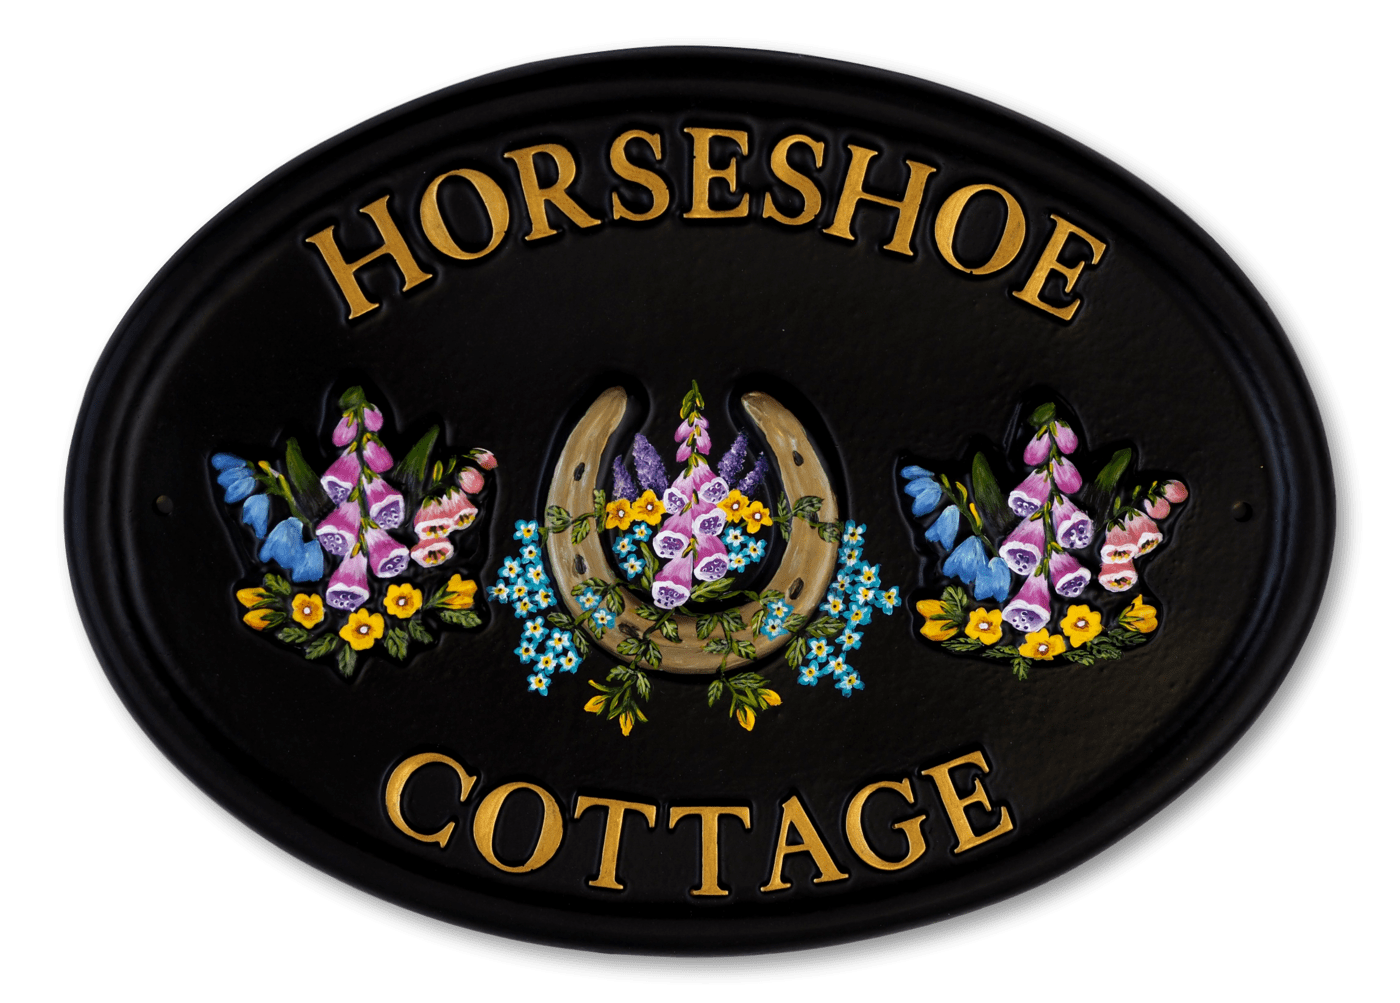 Horseshoe & Flowers house sign